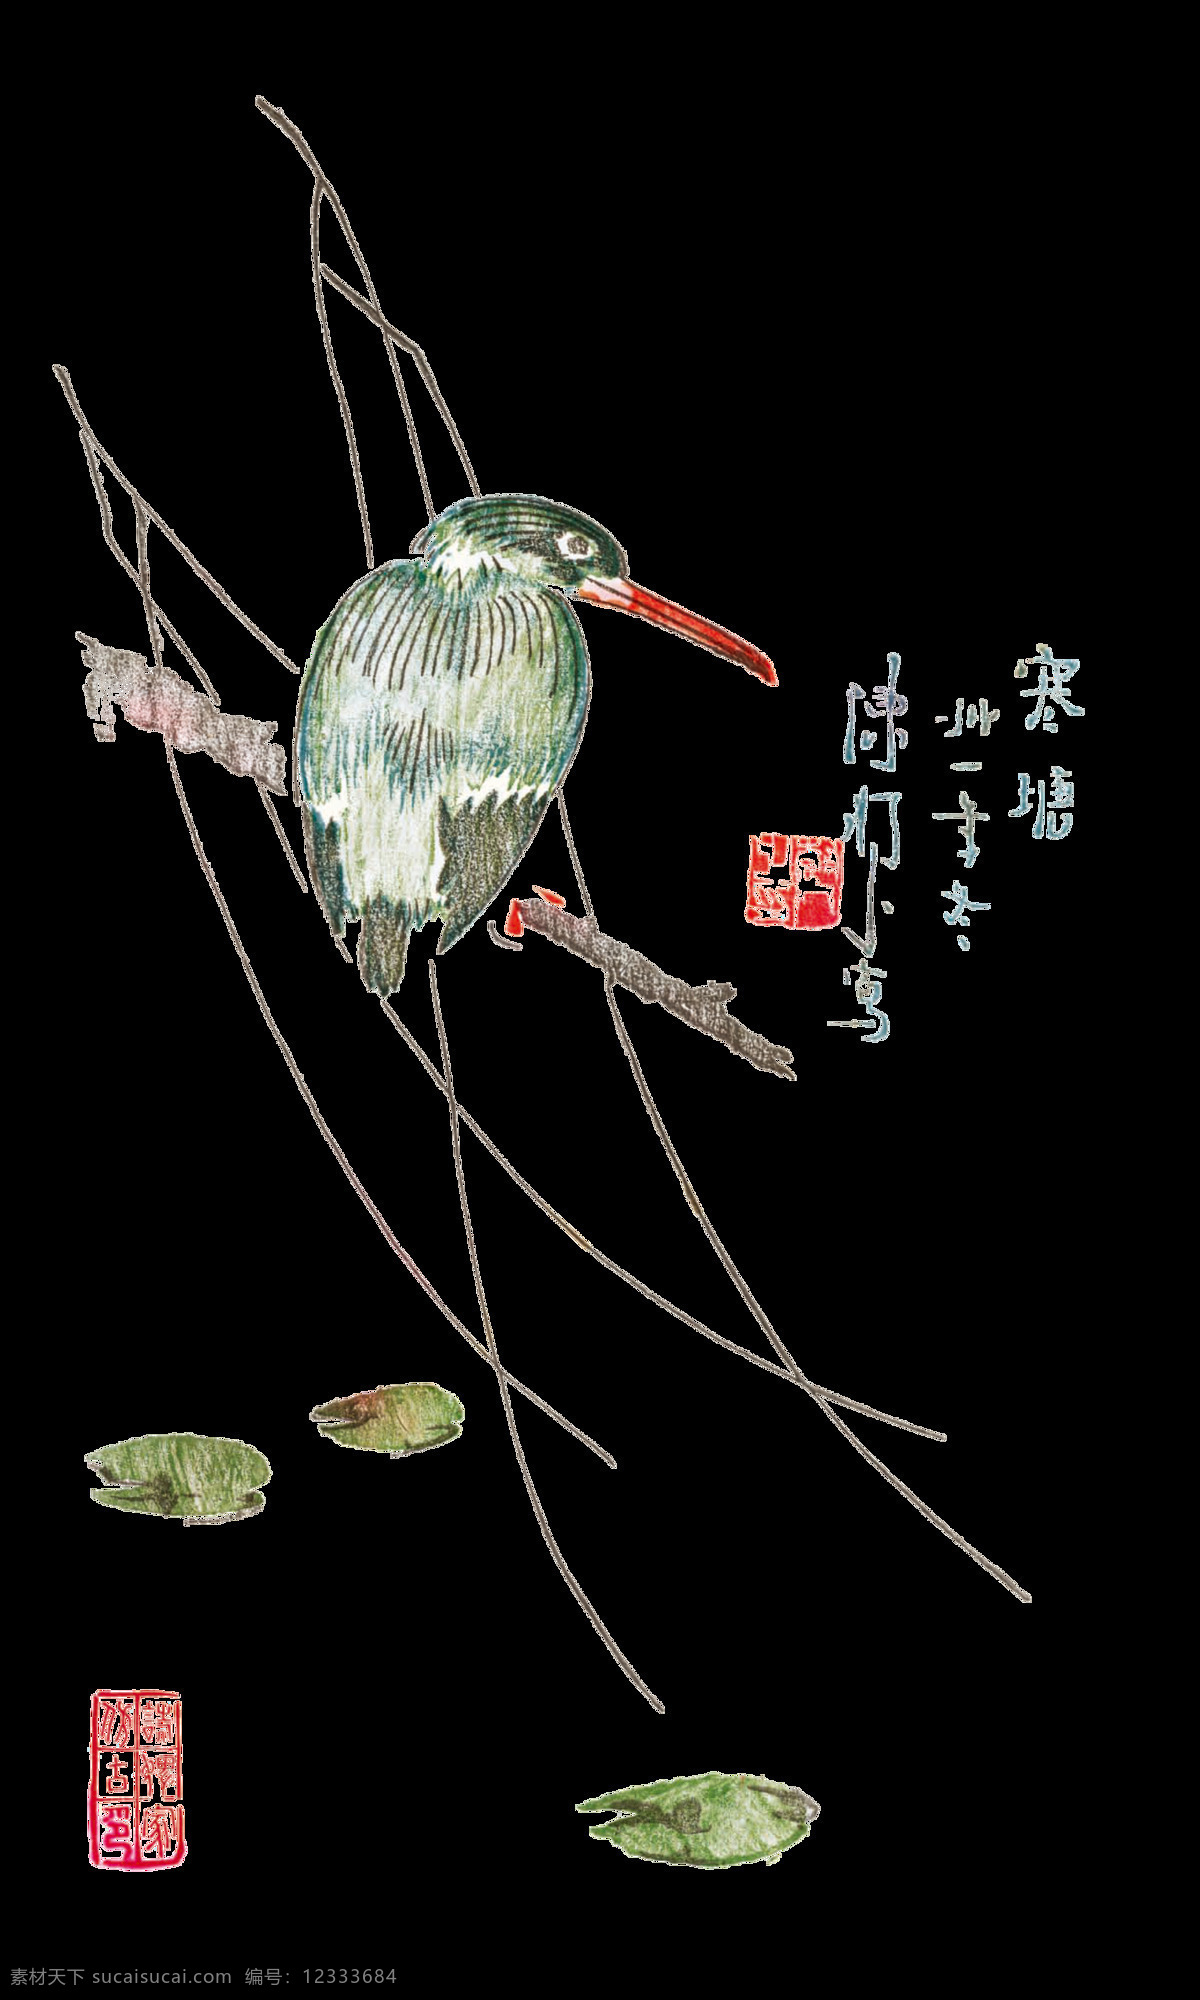 中国画 插图 传统 水墨 工笔画 中国风 书法 花鸟 文化艺术 绘画书法